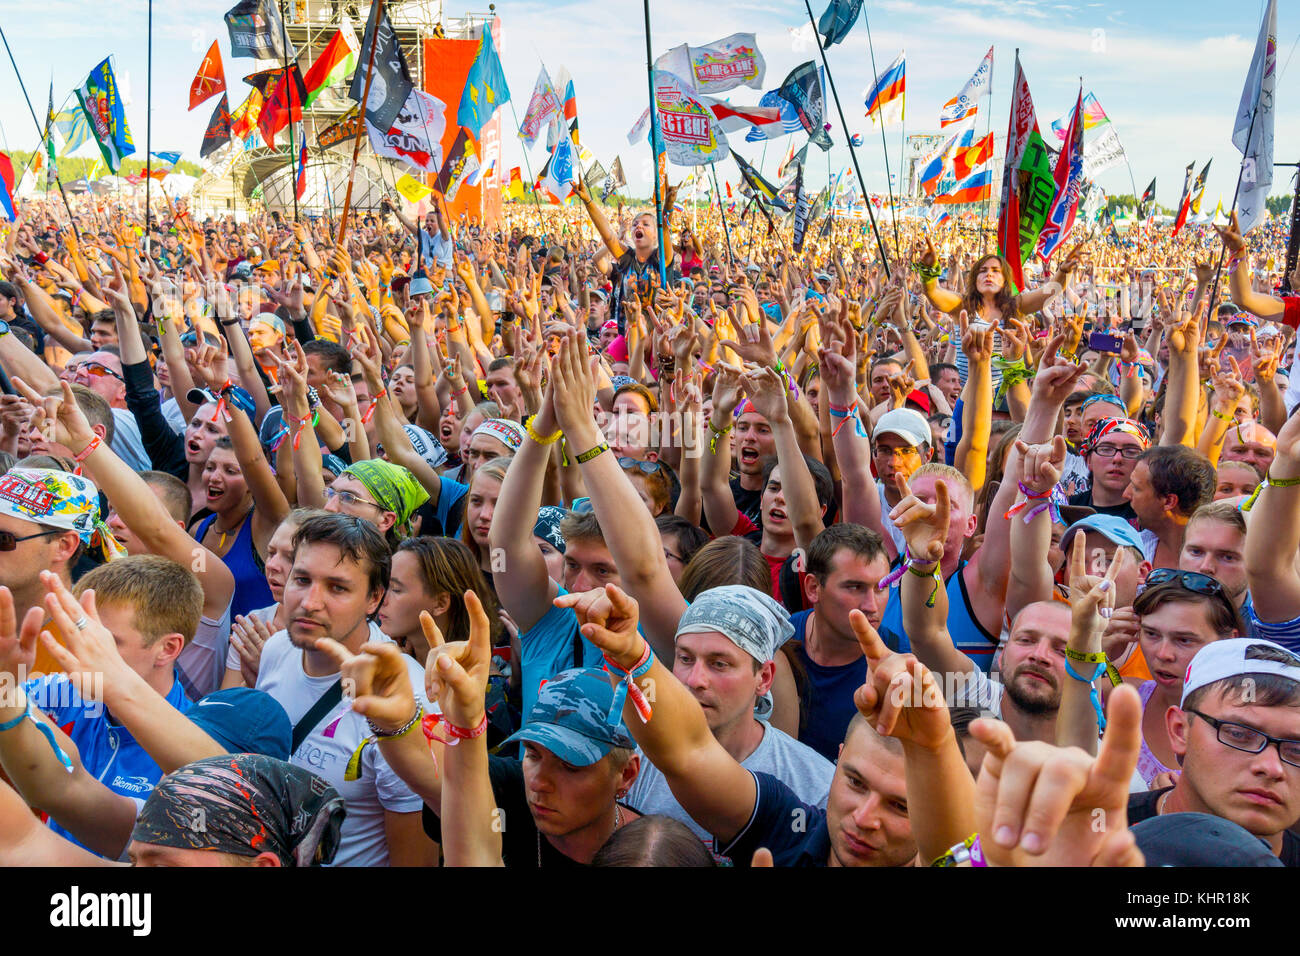 Счастье нашествие. Нашествие. Нашествие (рок-фестиваль) фото. Толпа людей на курорте Завидово. Нашествие Buxoro.